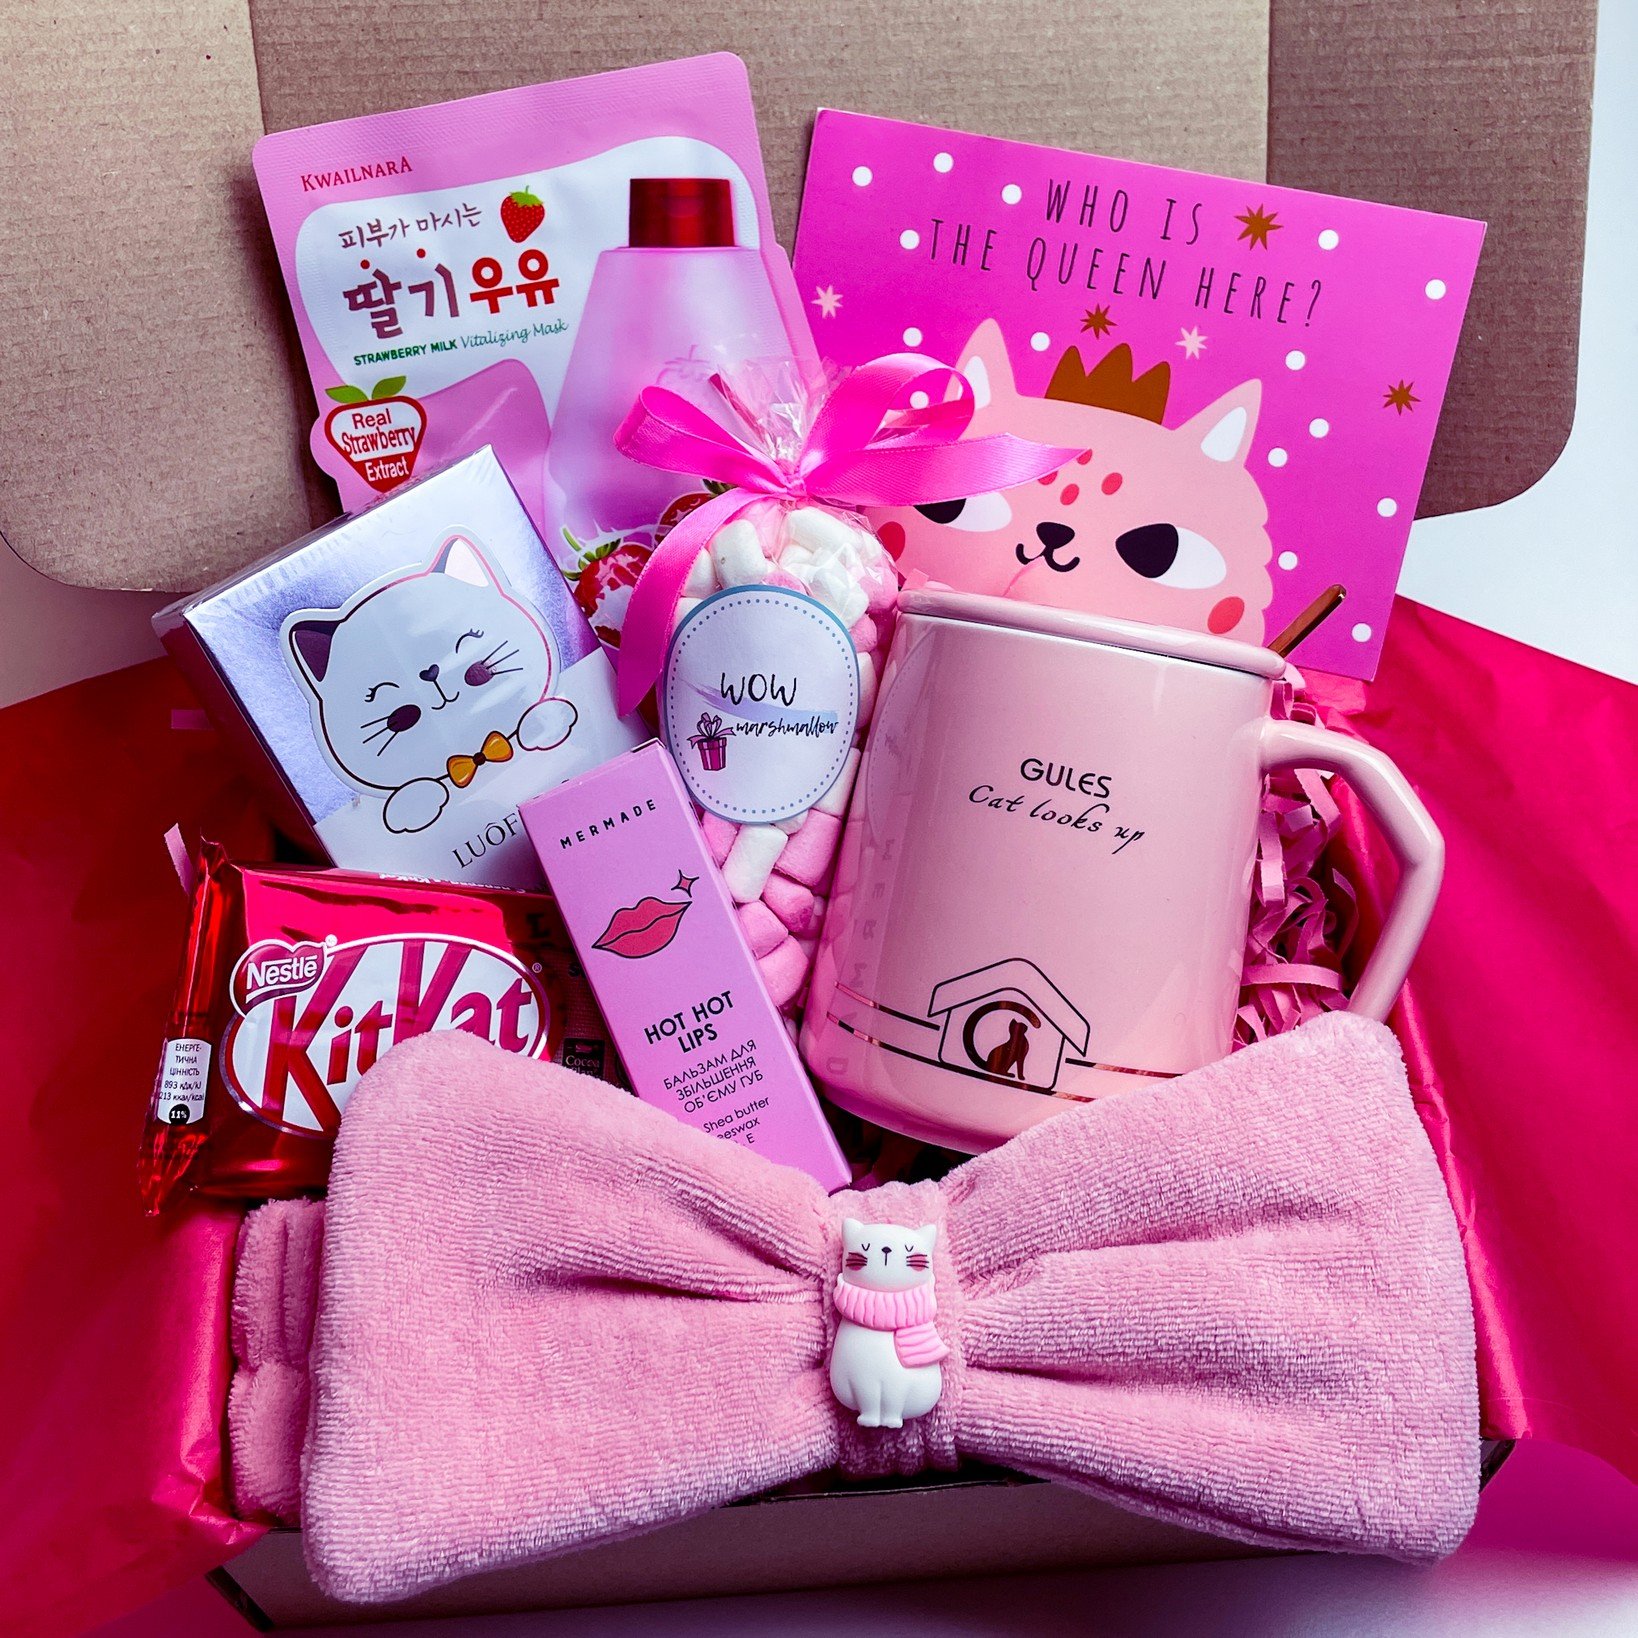 Подарунок для дівчини бокс WOW BOXES "Love Box №7"